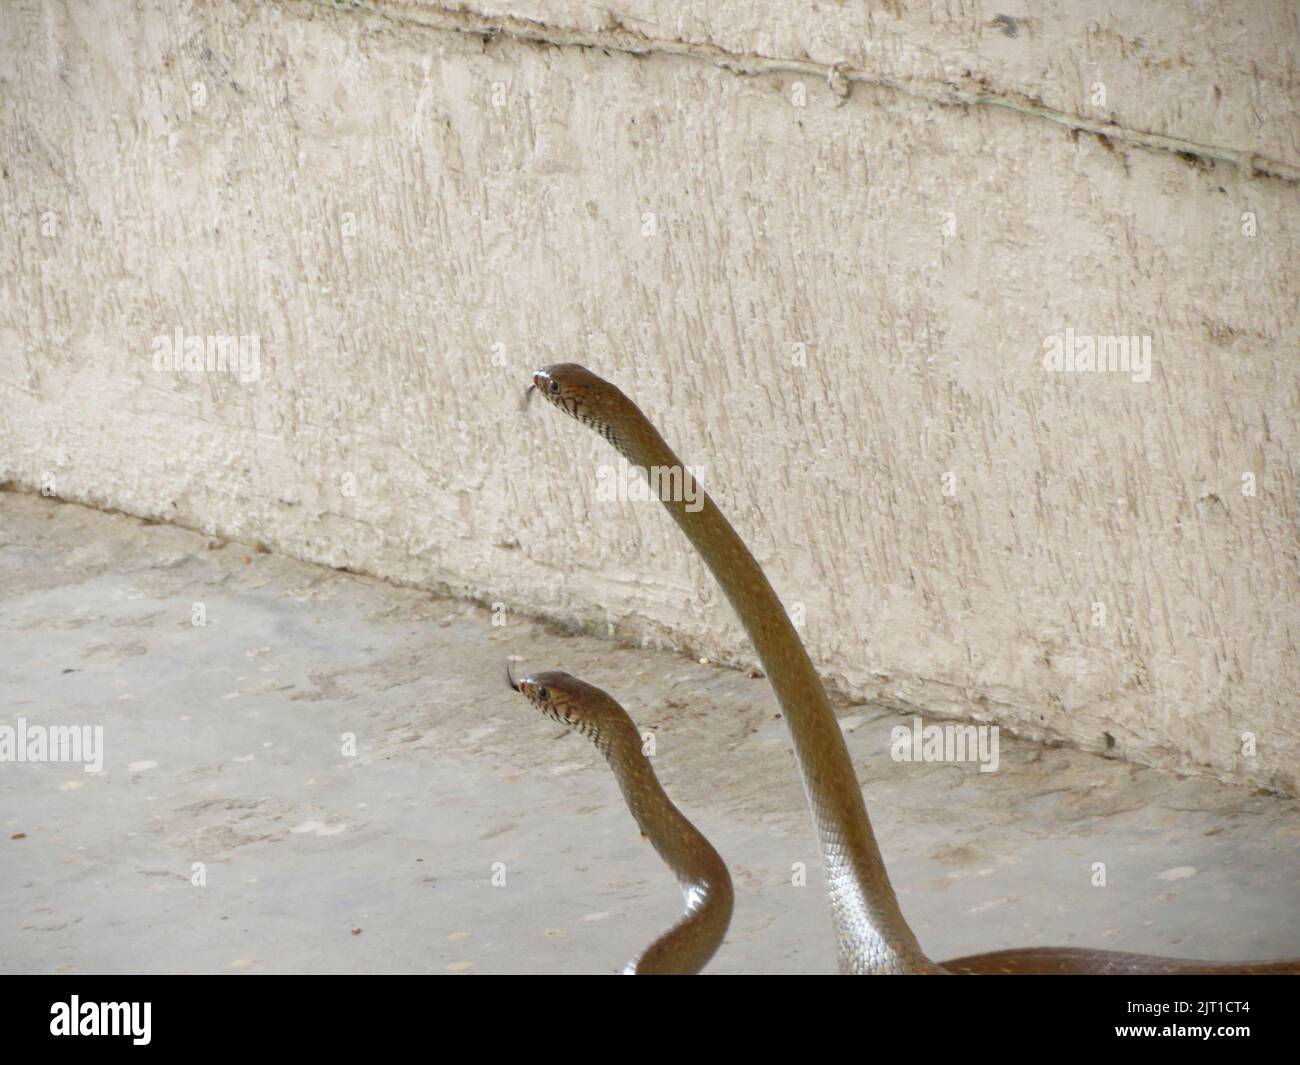 Las dos serpientes en el suelo Foto de stock